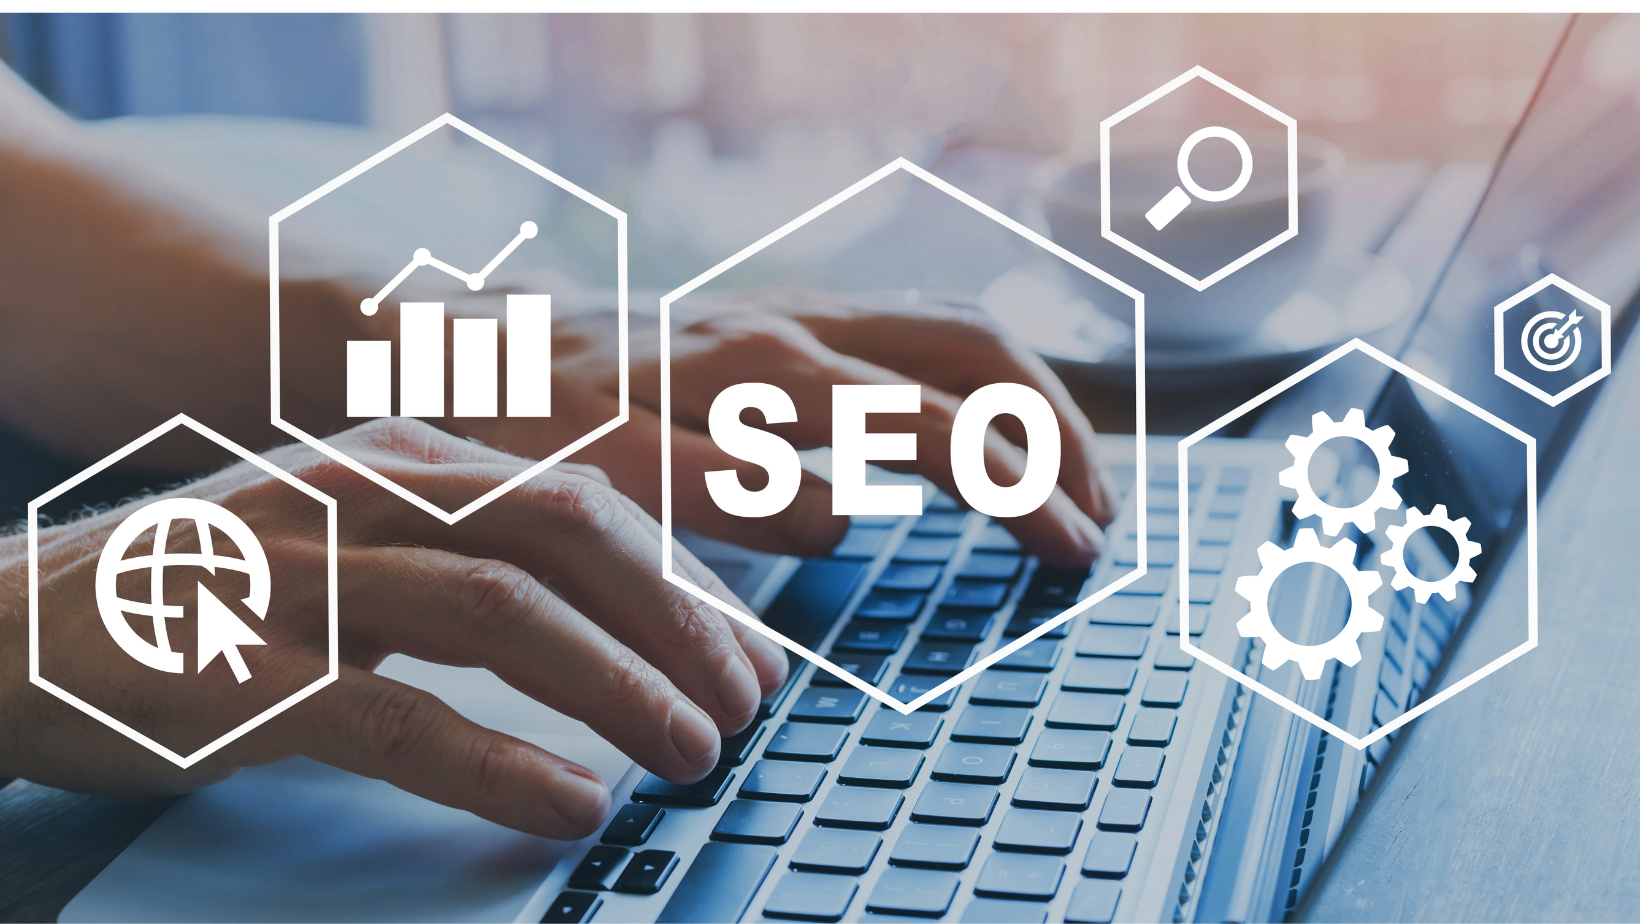 Website design Web design Logo design Business logo SEO Search engine optimization Google Ranking Social Media Management Facebook Instagram